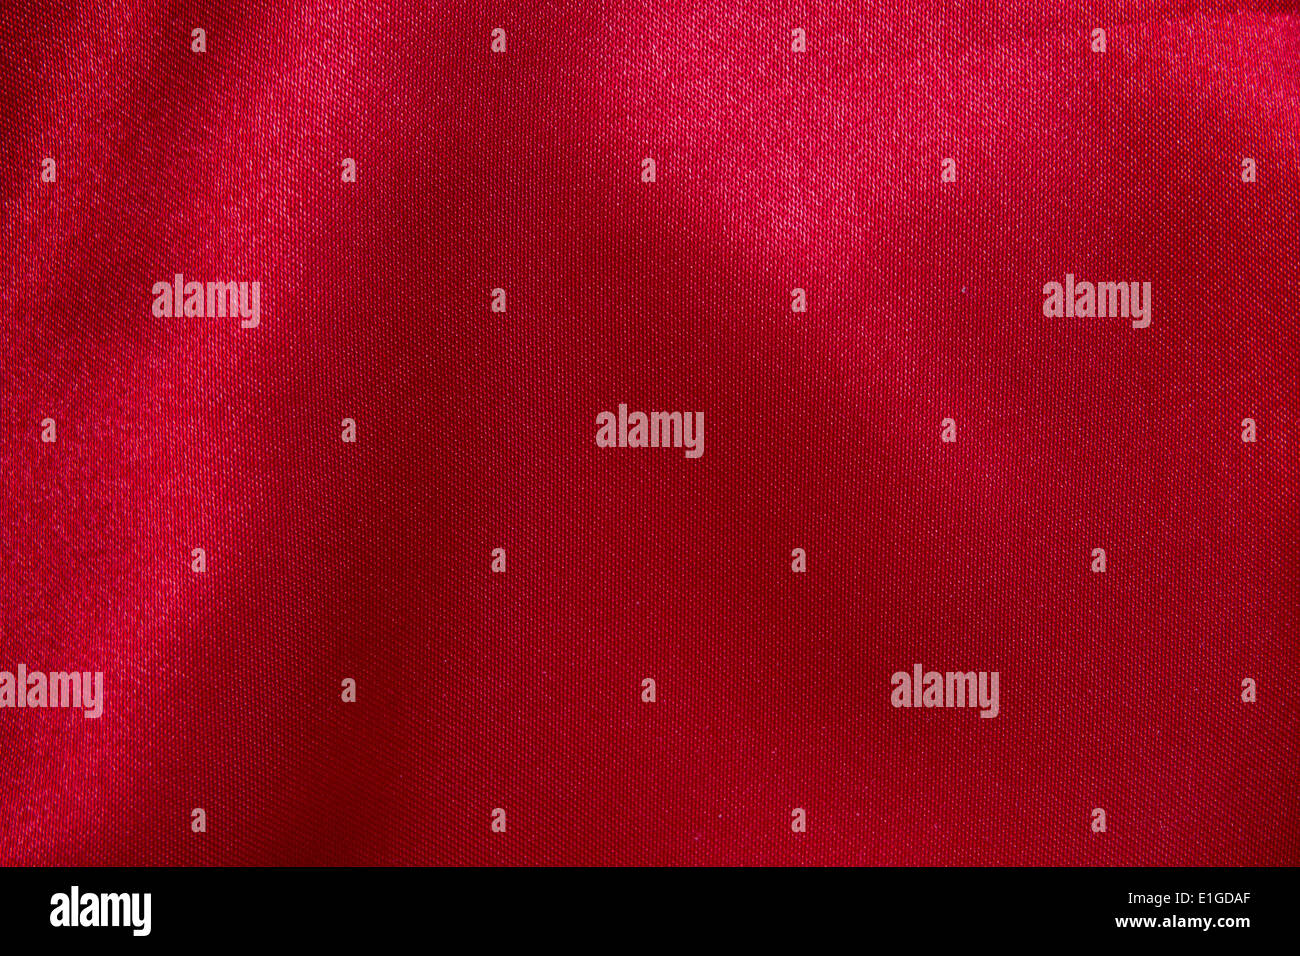 Tessuto rosso immagini e fotografie stock ad alta risoluzione - Alamy